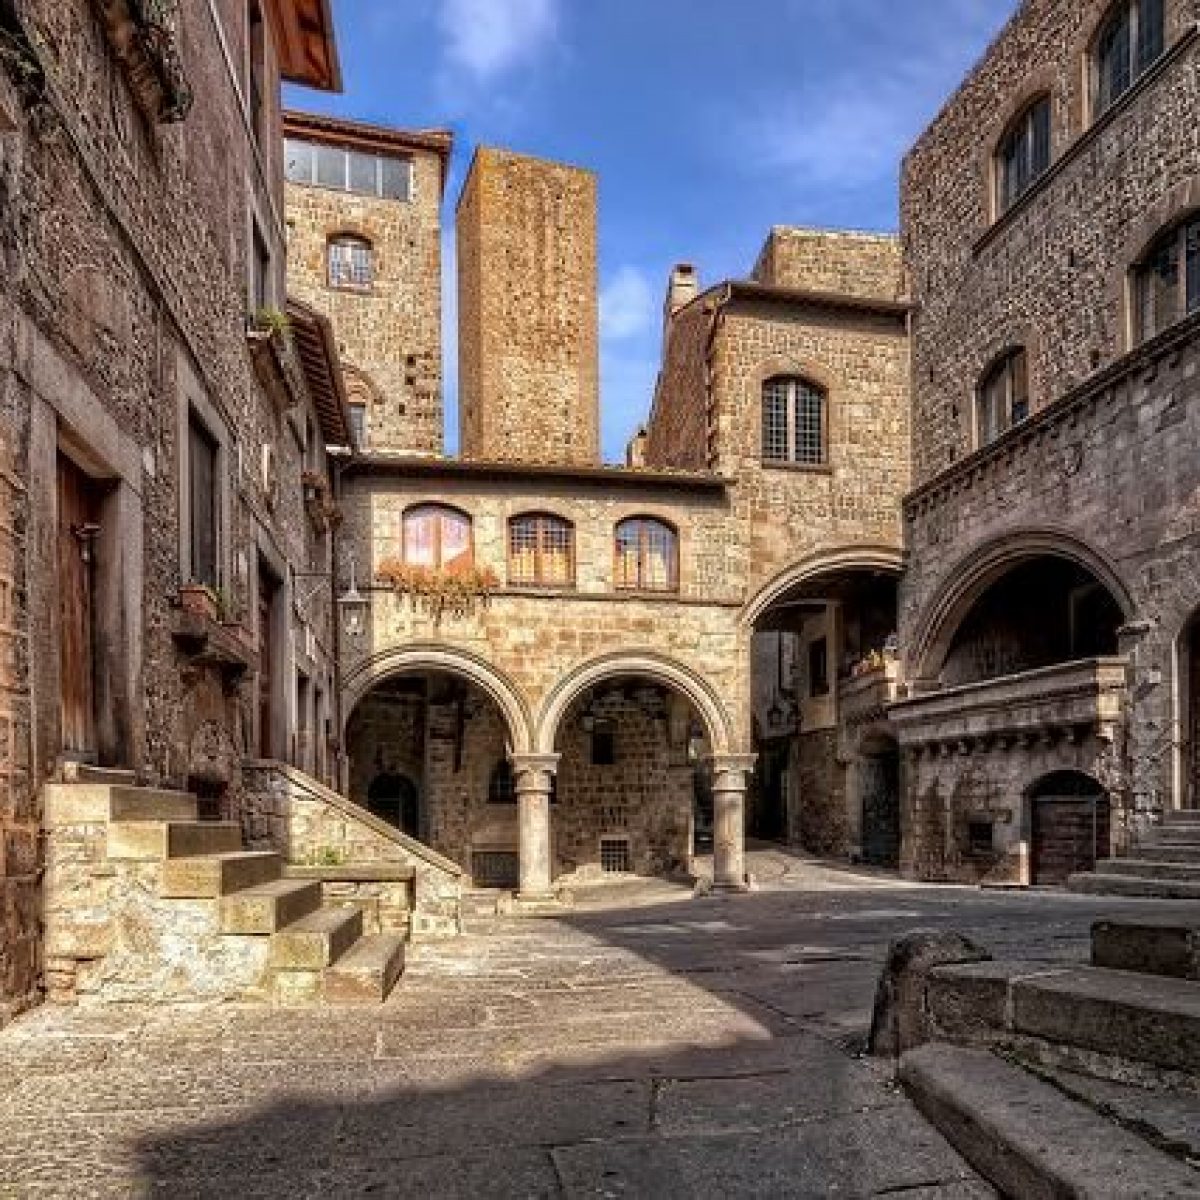 Quartiere medievale più grande d'Europa e tra i meglio conservati in Italia